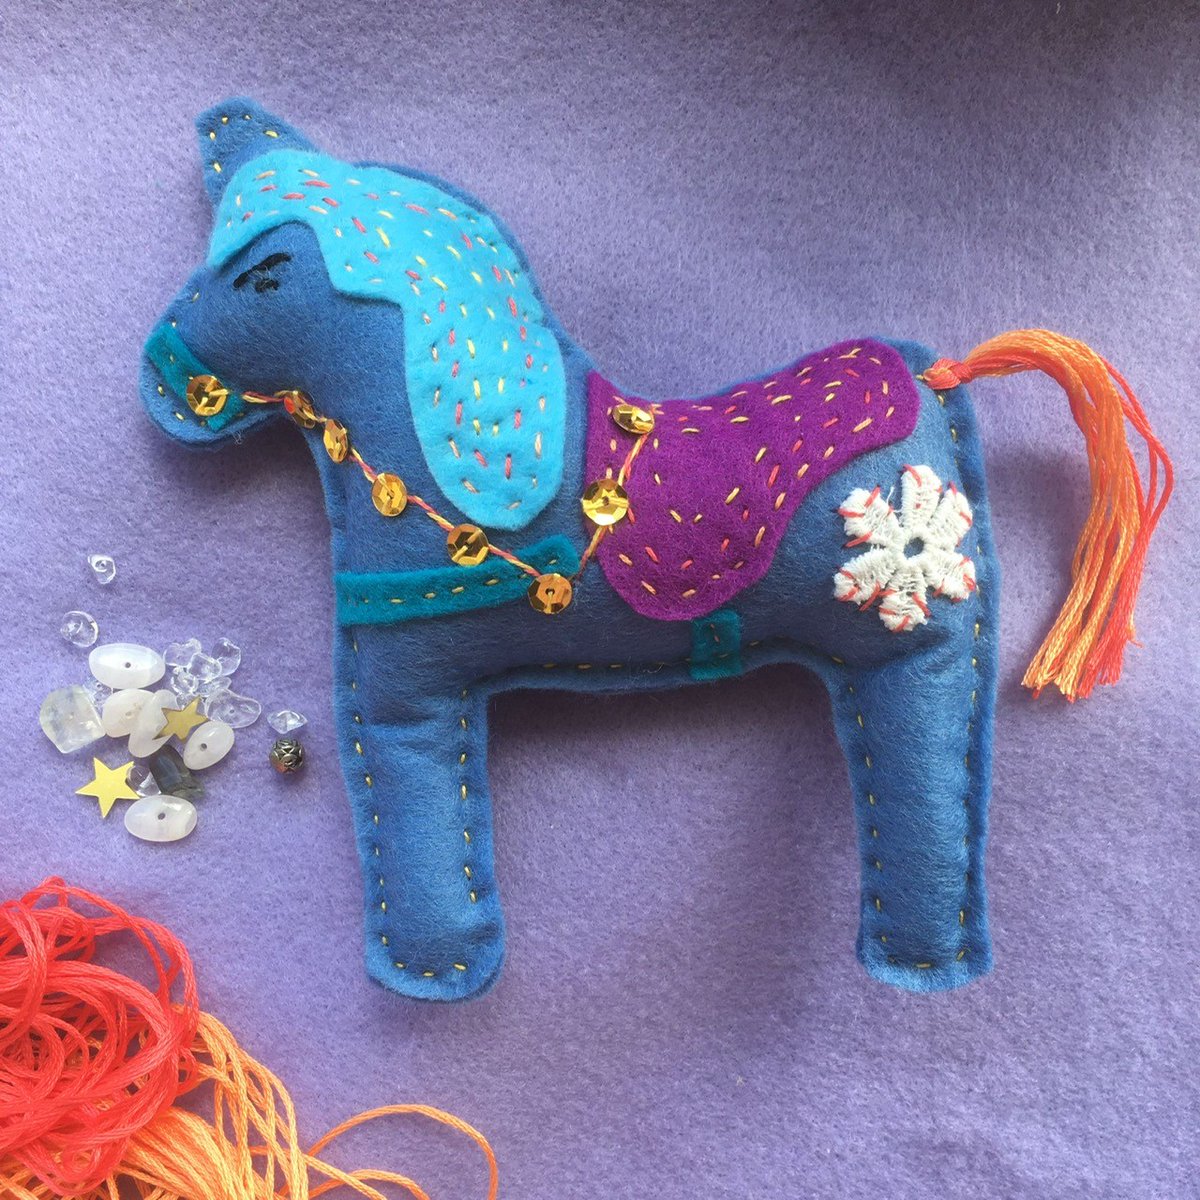 J O U R N E Y - T H R O U G H - A R T 
Saturday 27 May, 10am-12pm.
Make a decorative toy horse.
For ages 6*-13 years (under 8s must be accompanied by an adult).
£7 |  Booking essential
---
#bideford #artforchildren #visitdevon @gtsdevon @bidefordcollege @ShebbearArts @torridgedc